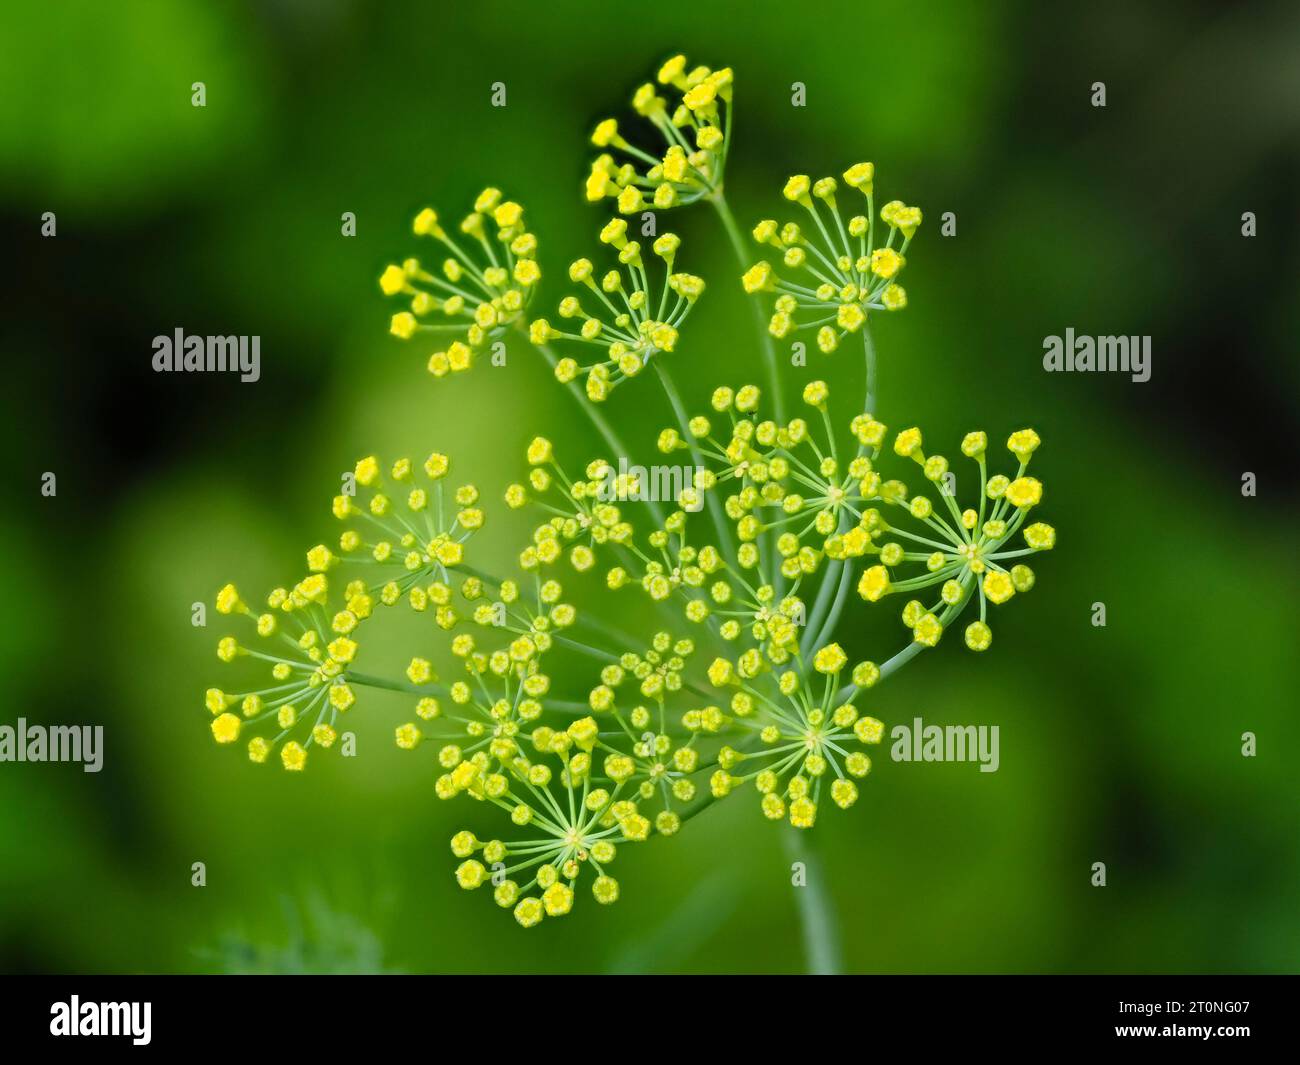 Fleurs jaune-vert dans l'ombre de la rude herbe culinaire annuelle aromatisée à l'anis, Anethum graveolens, aneth Banque D'Images